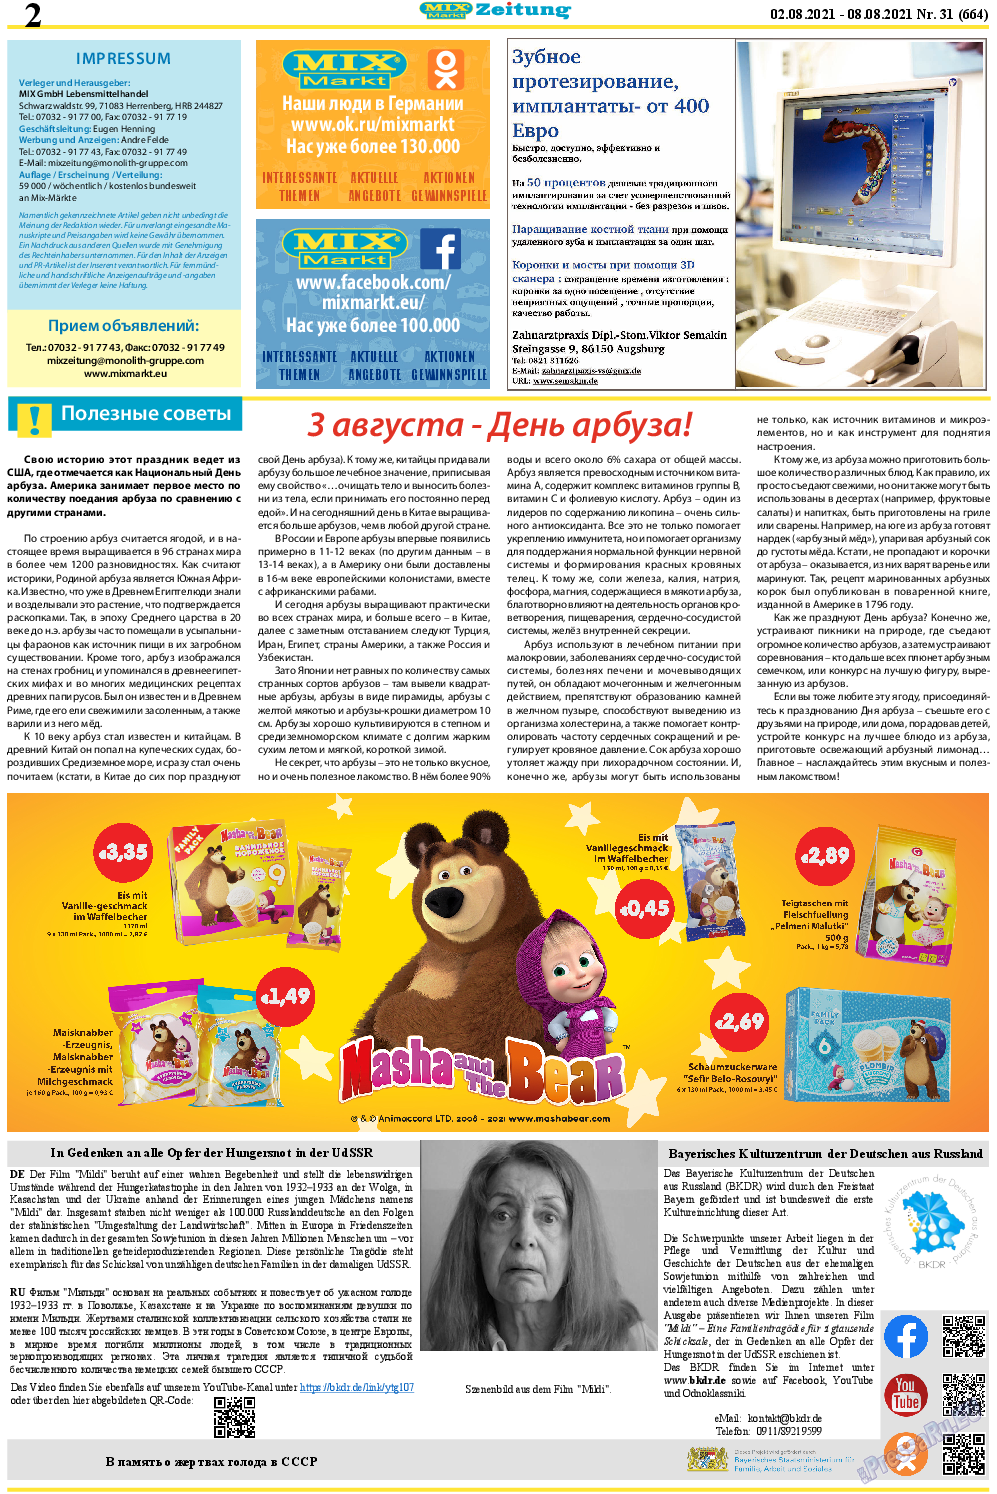 MIX-Markt Zeitung, газета. 2021 №31 стр.2